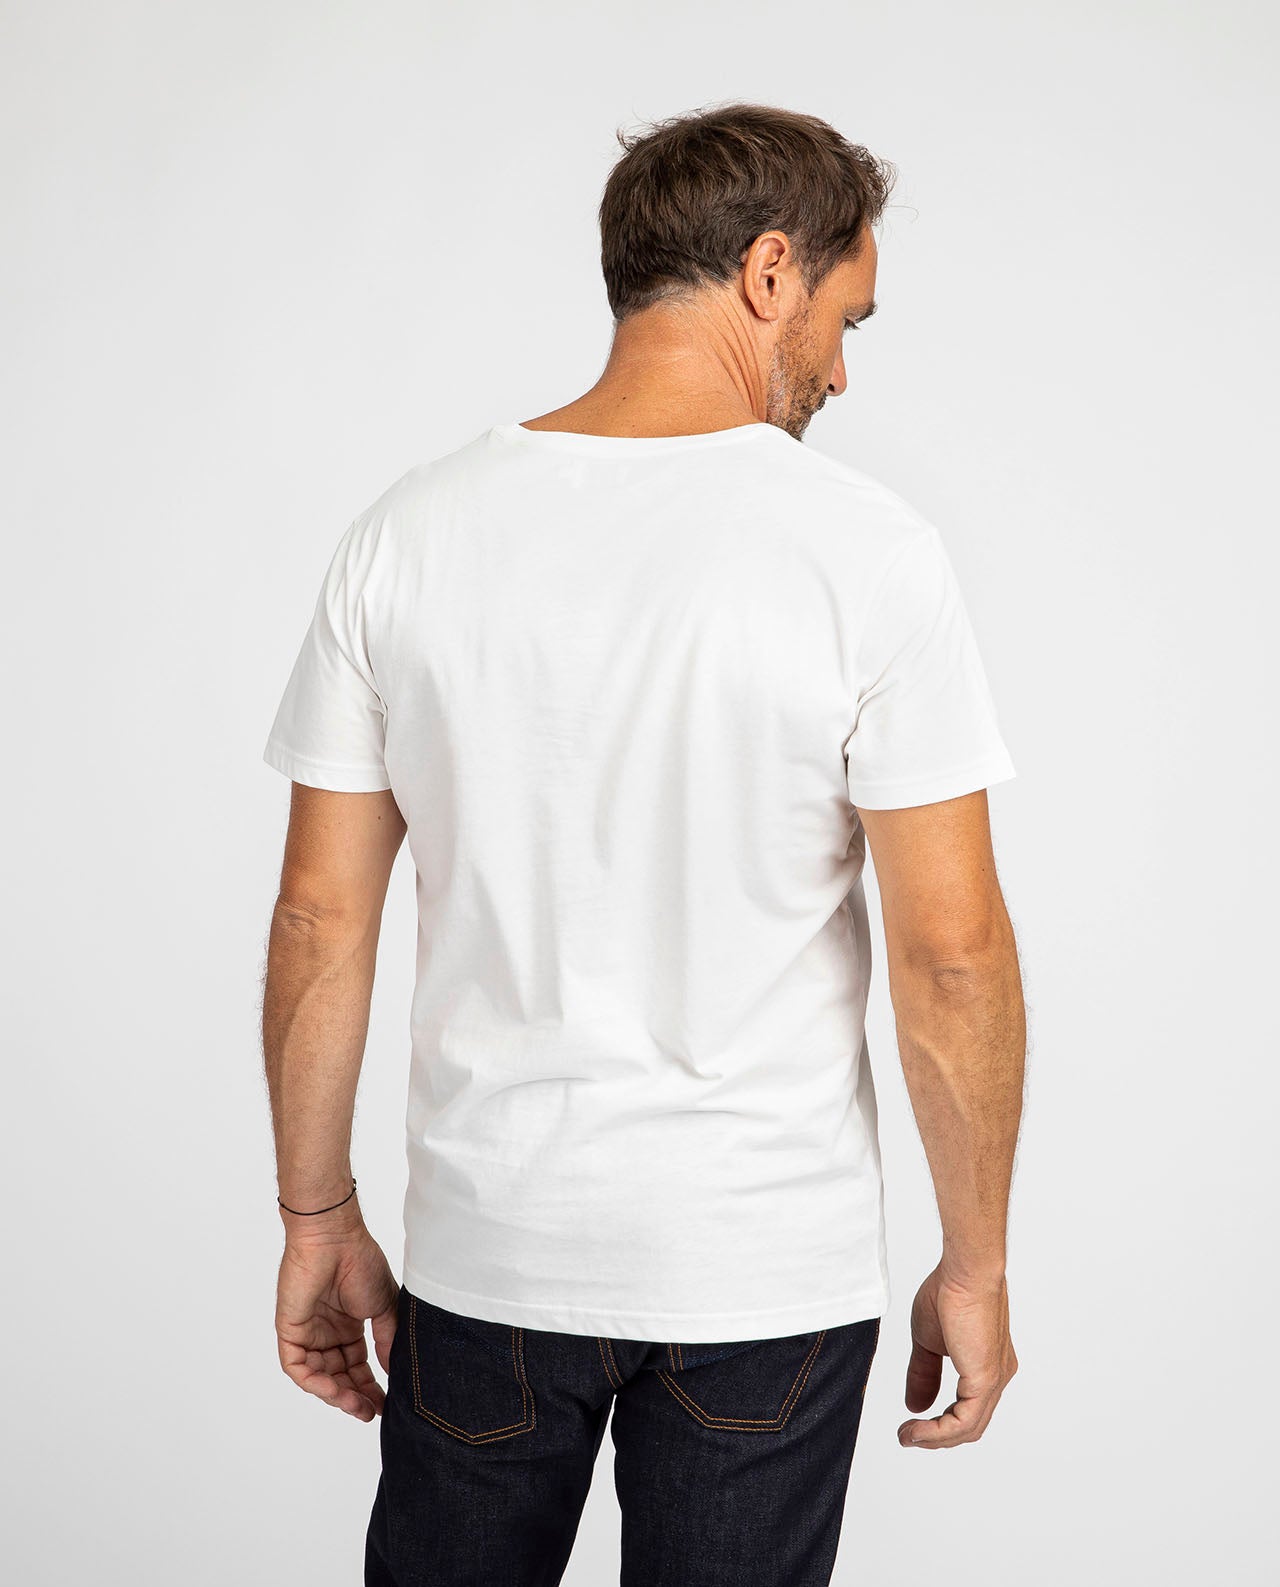 marché commun bask in the sun t-shirt manches courtes homme imprimé surf van éco-responsable éthique coton biologique